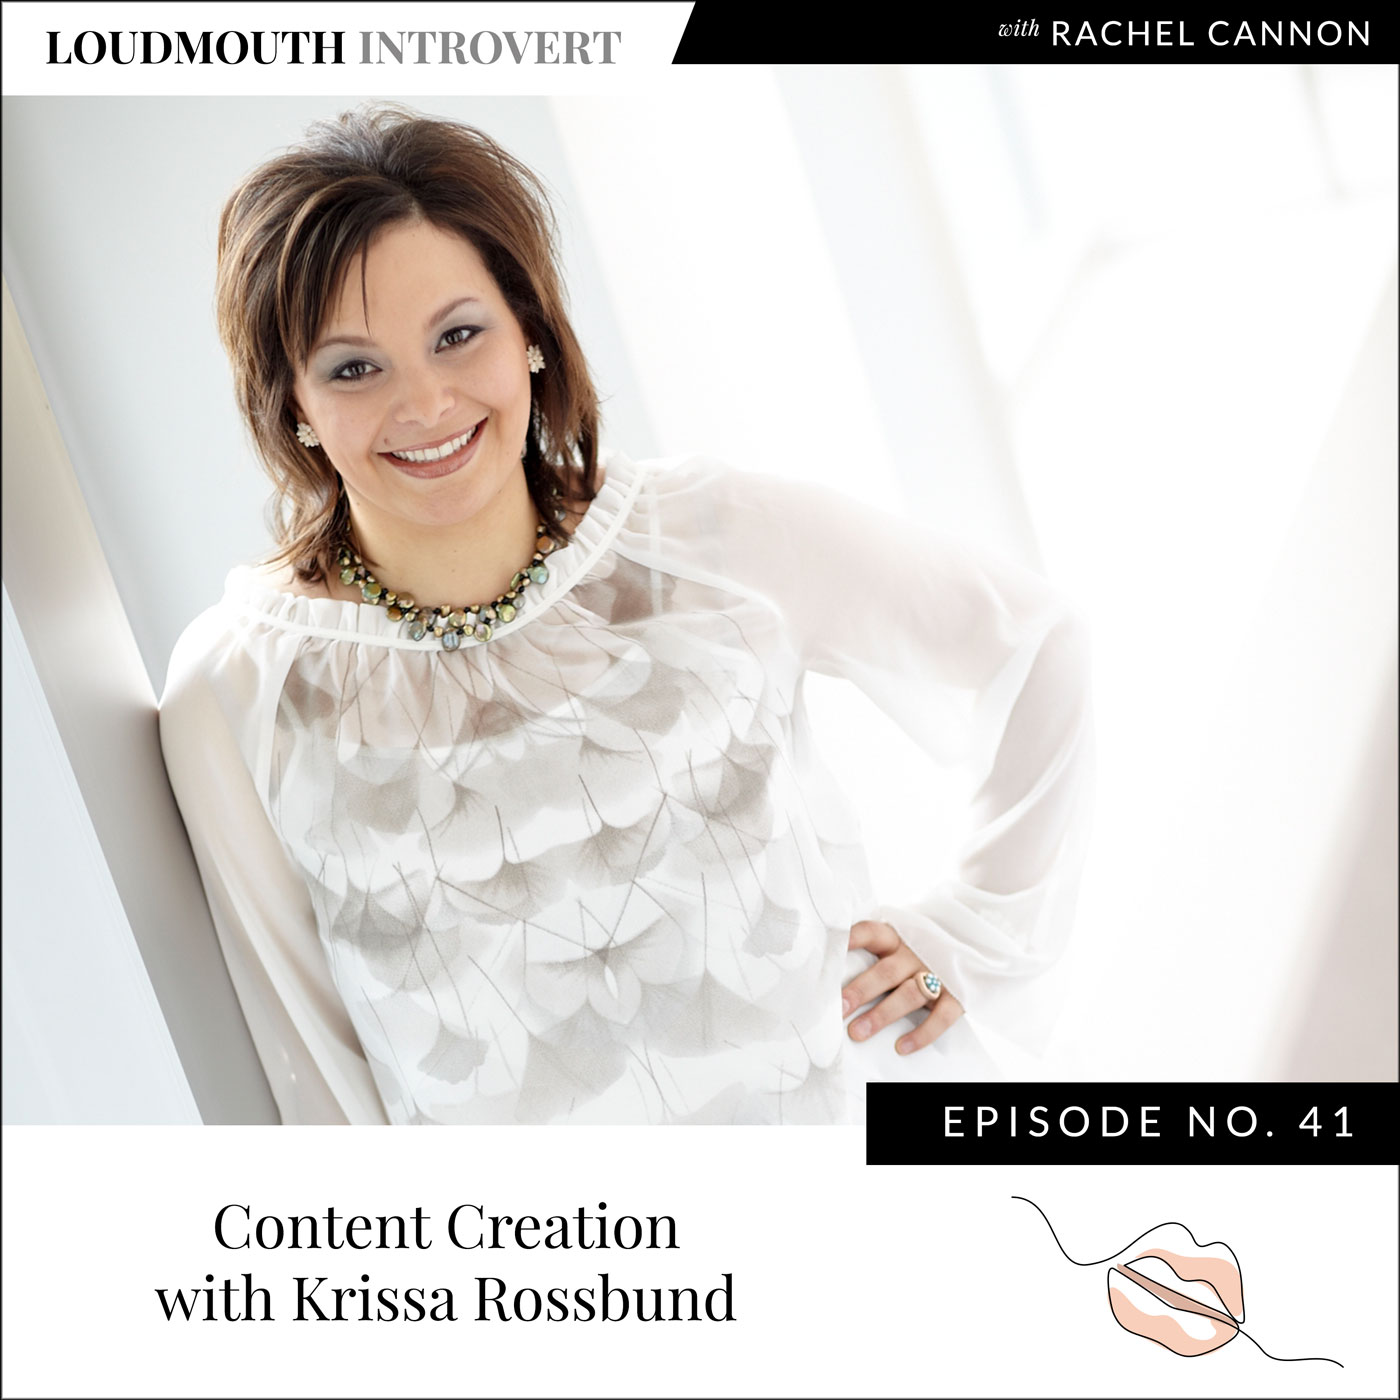 Content Creation with Krissa Rossbund